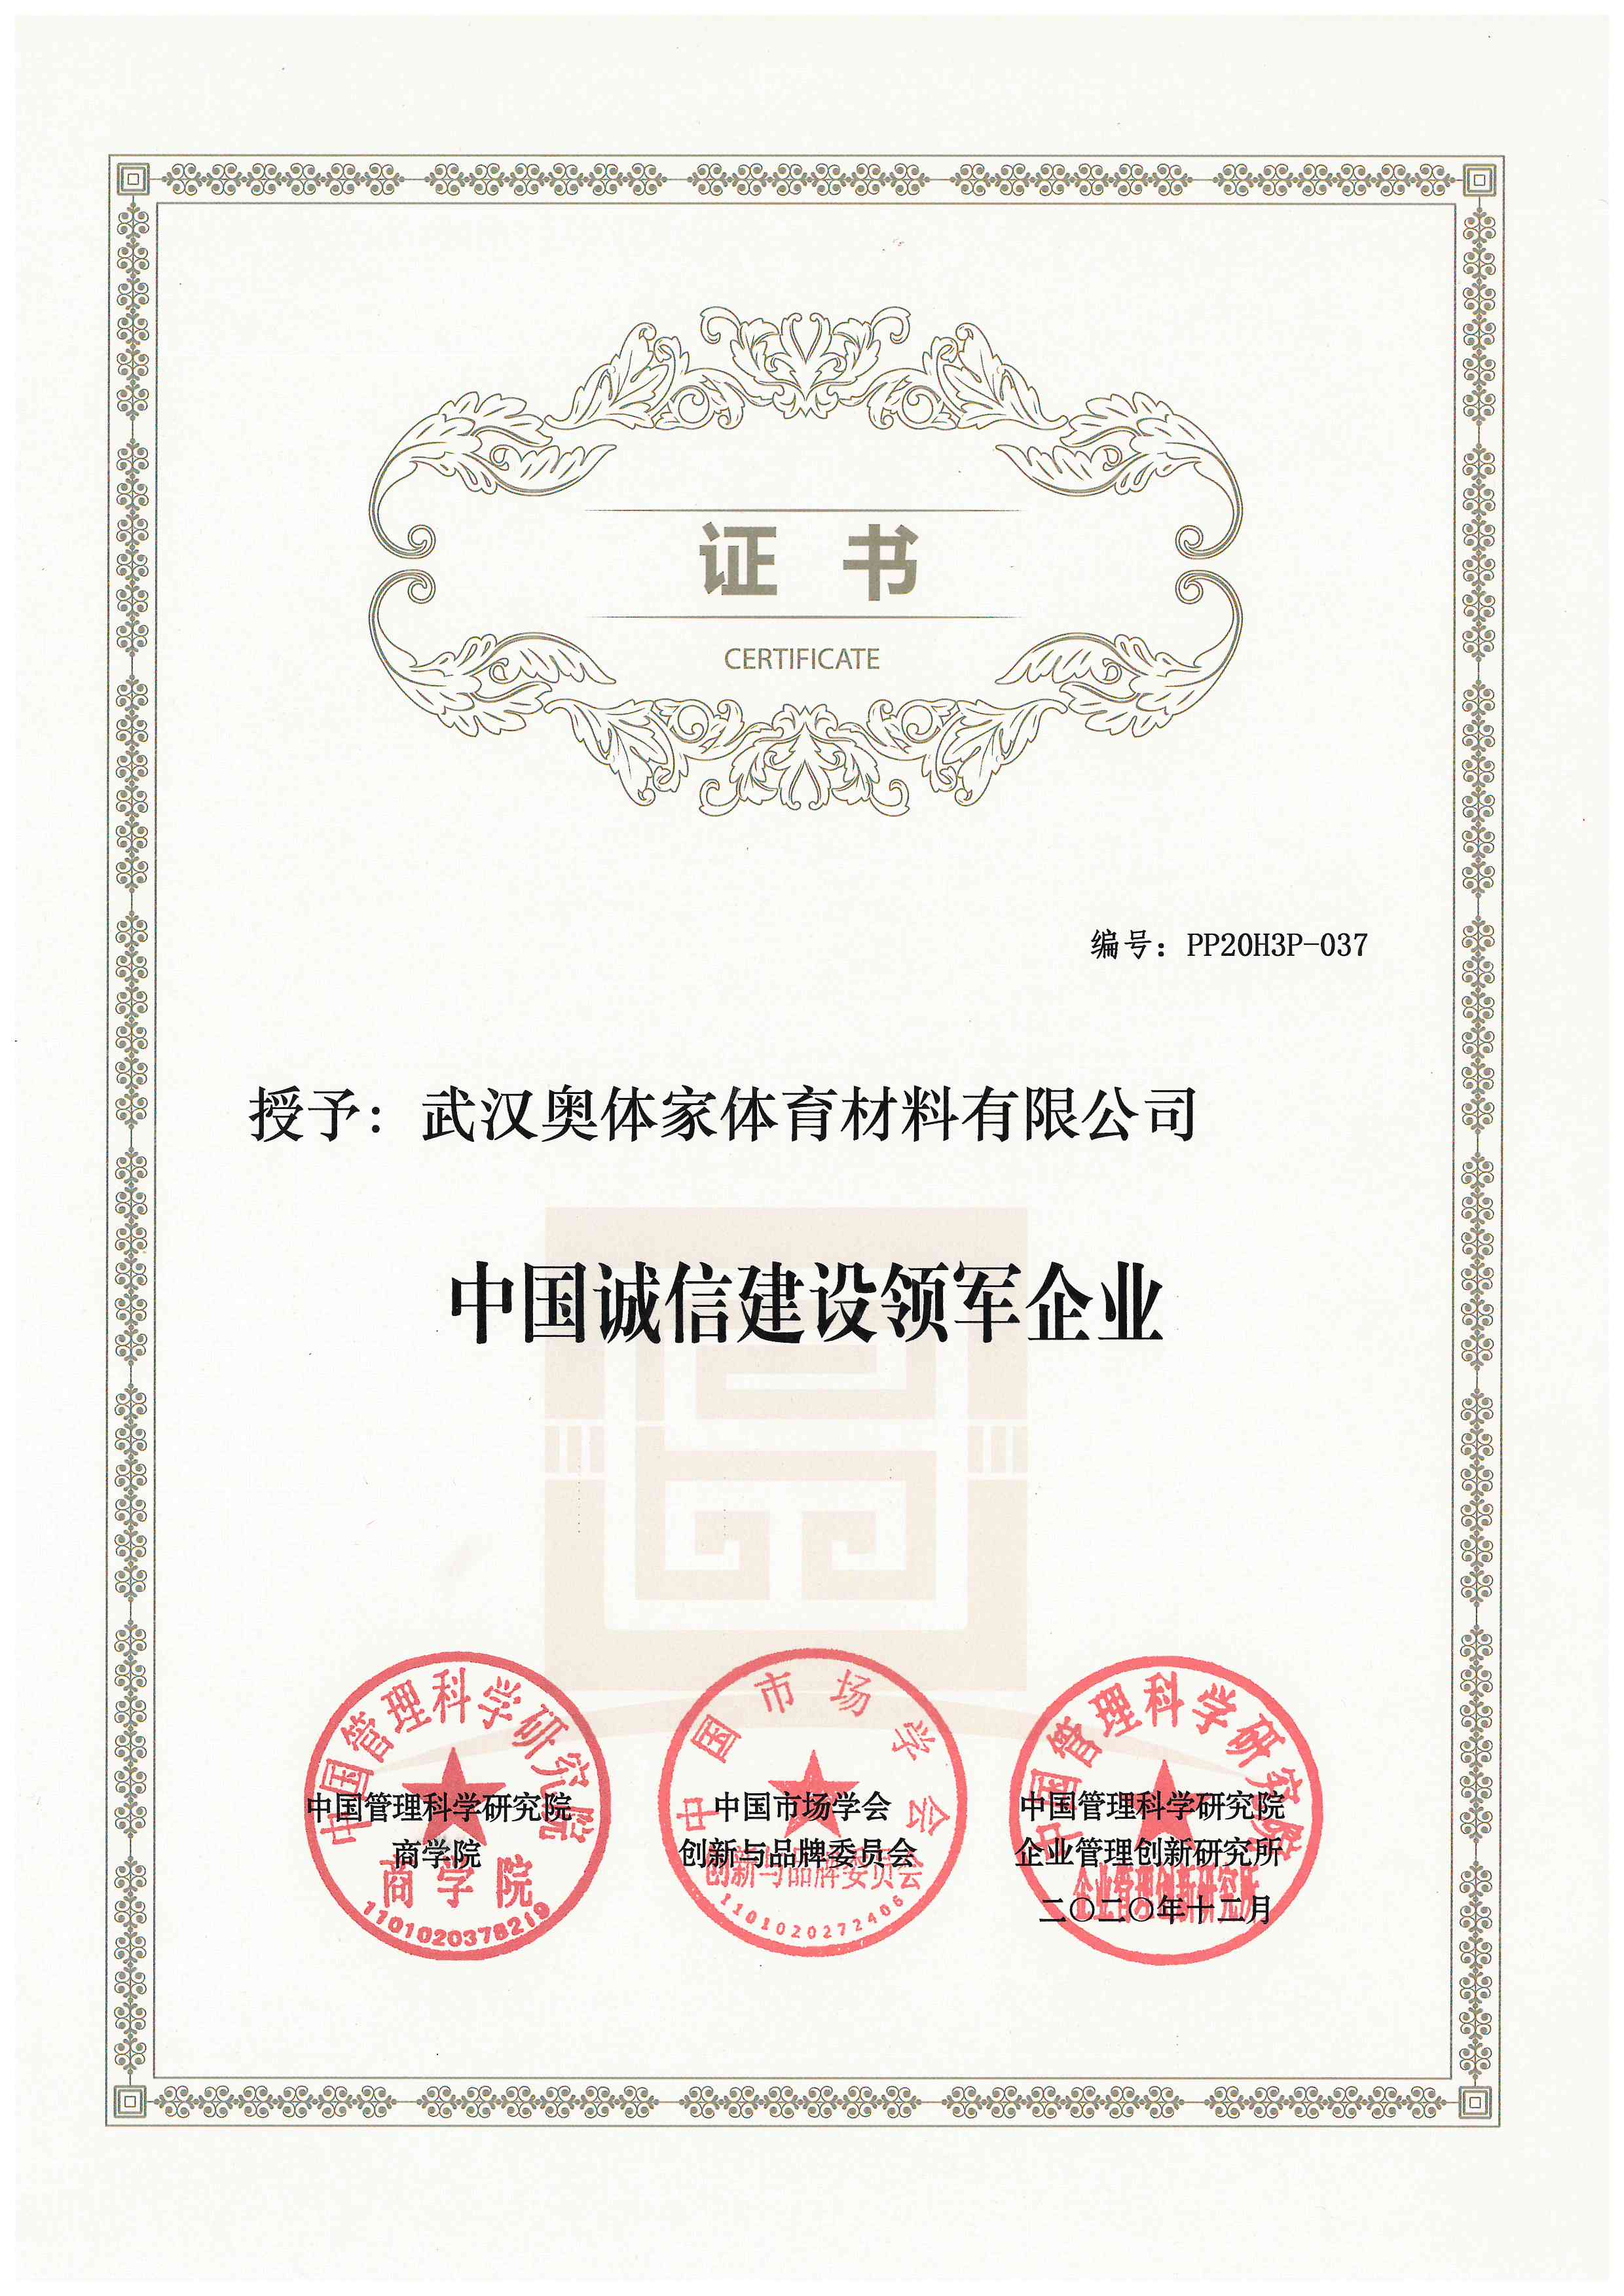 奥体家荣获《中国诚信建设领军企业》证书